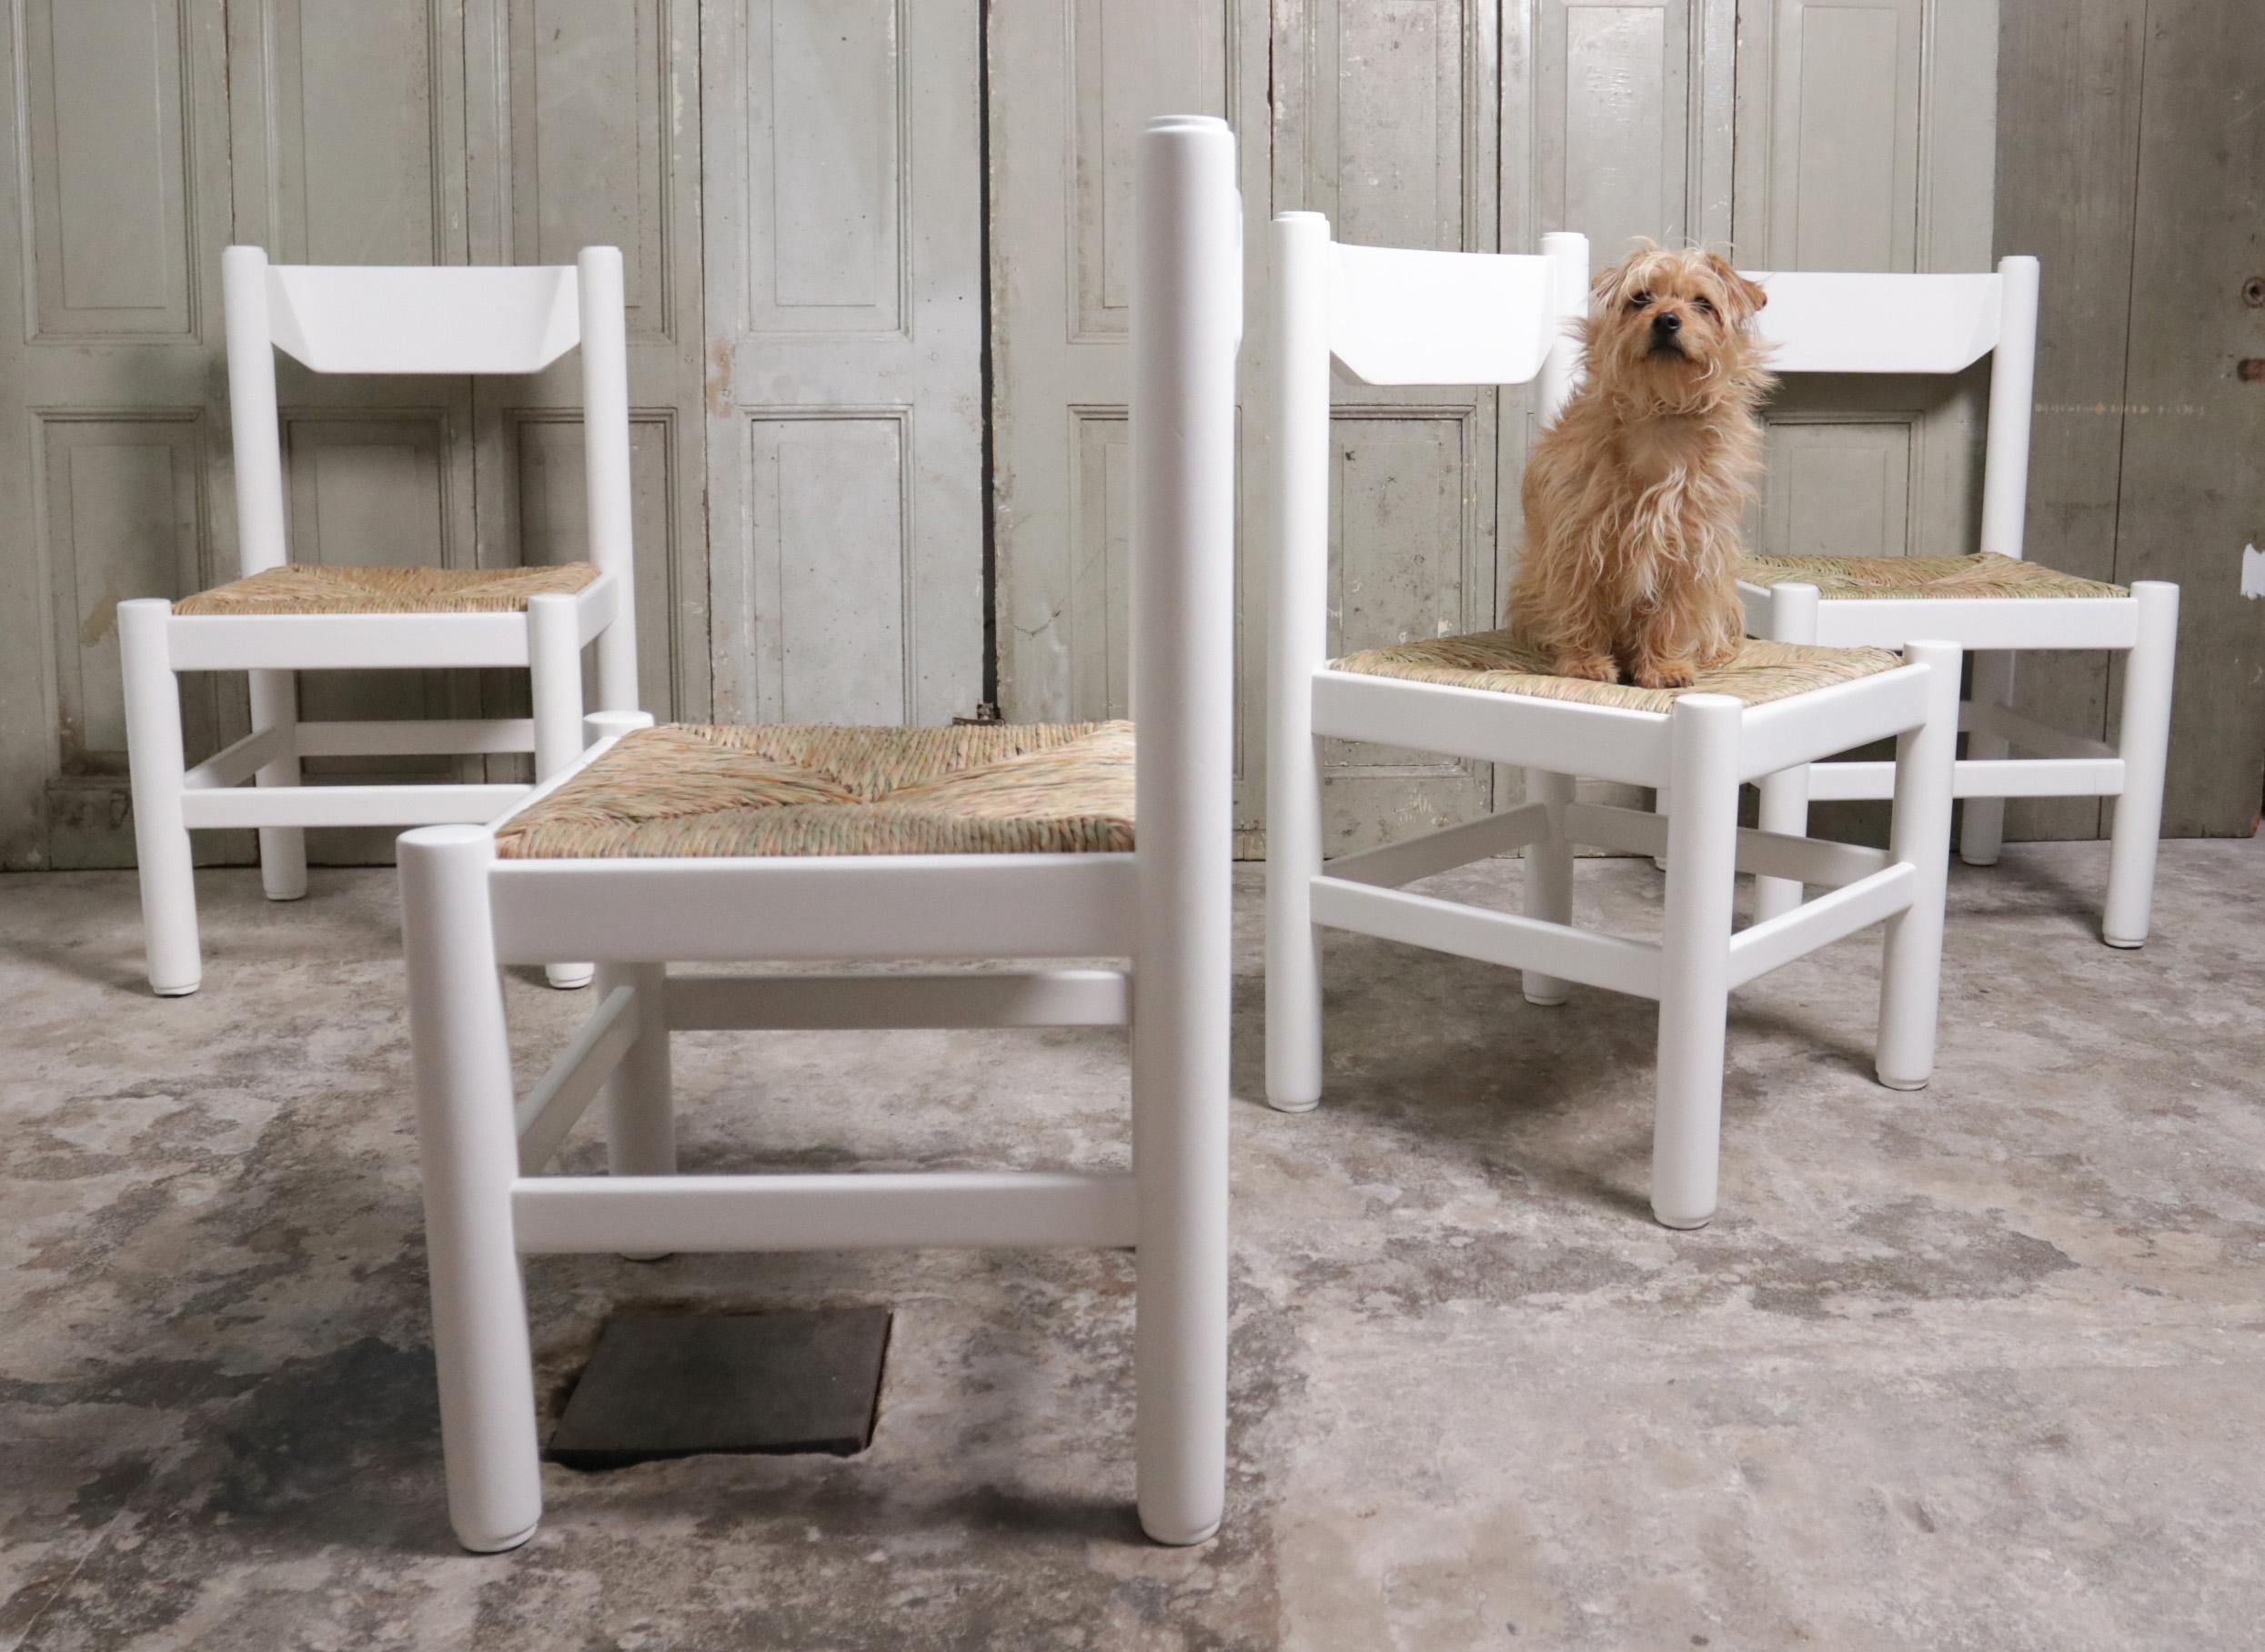 Ces chaises sont souvent attribuées à Vico Magistretti, produites par Cassina (attr.). Fabriqué en Italie, datant des années 70.
Fabriquées en bois massif, peintes en blanc et dotées d'une assise en jonc.
S'adapte à l'intérieur où il est important